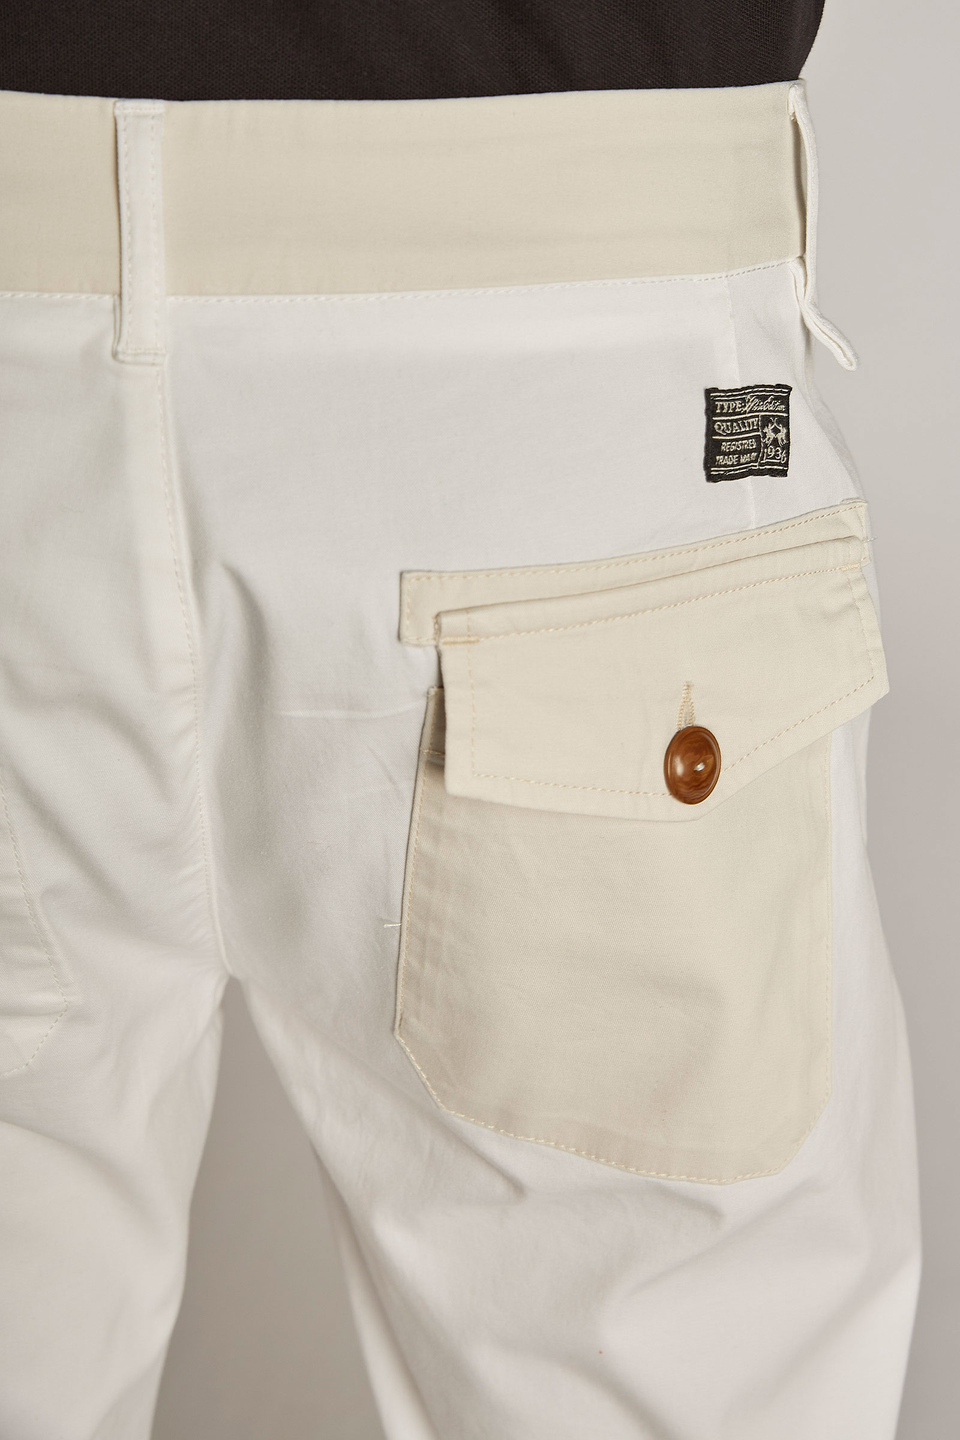 Pantalone da uomo in cotone misto lino regular fit - La Martina - Official Online Shop